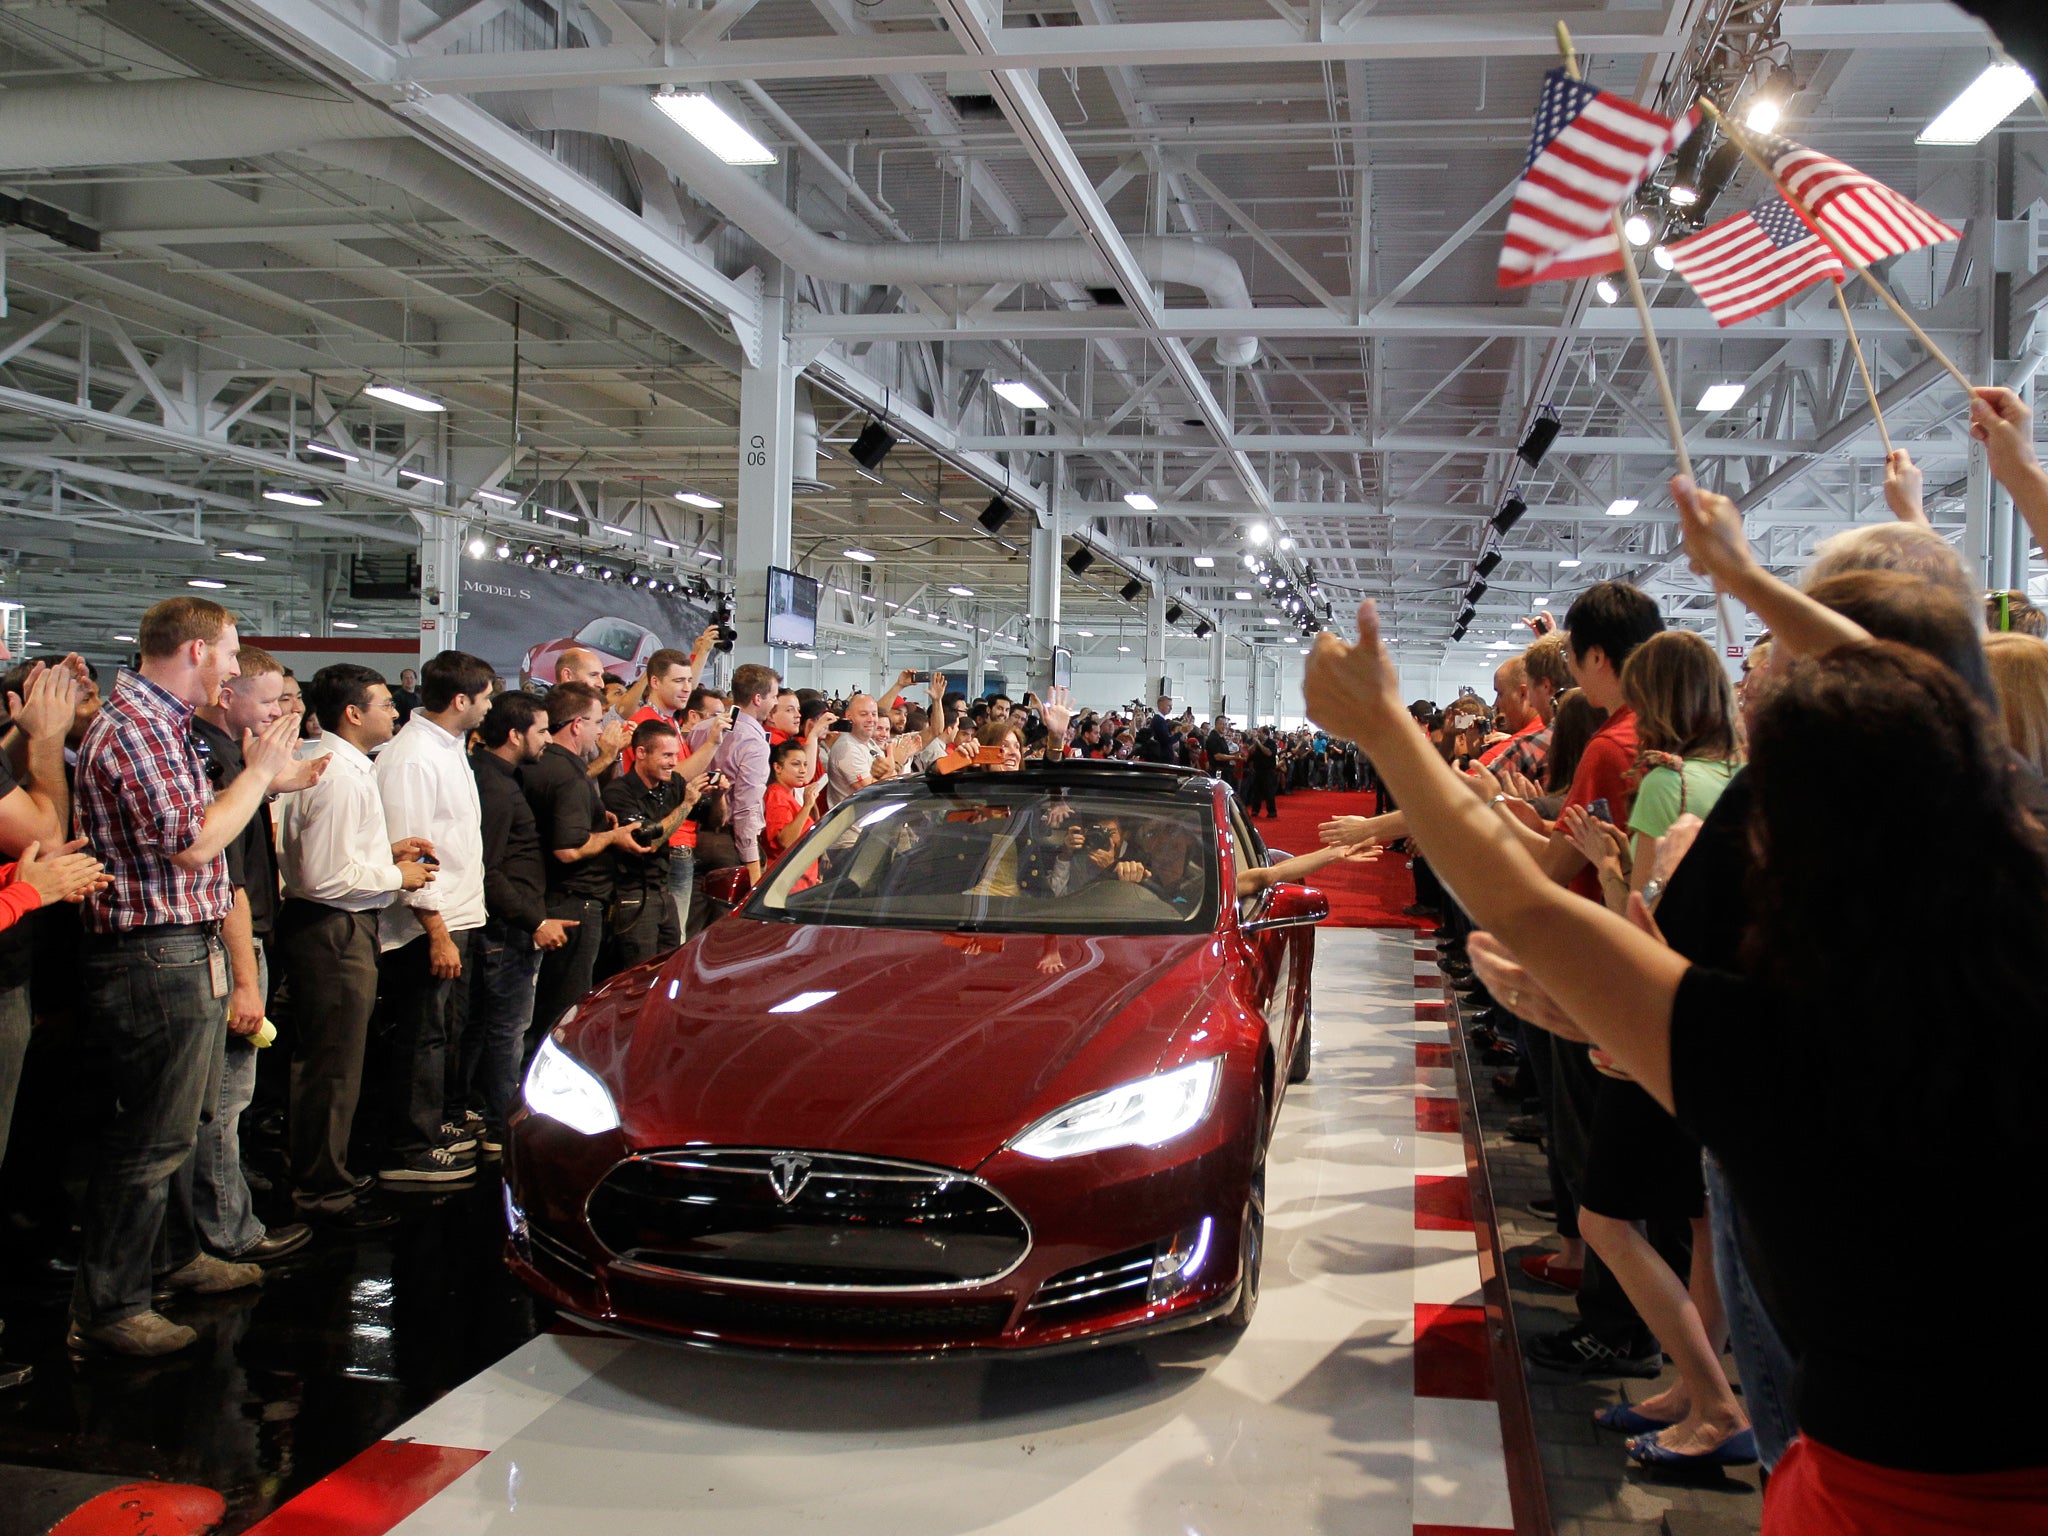 A bit about Tesla's recent successes